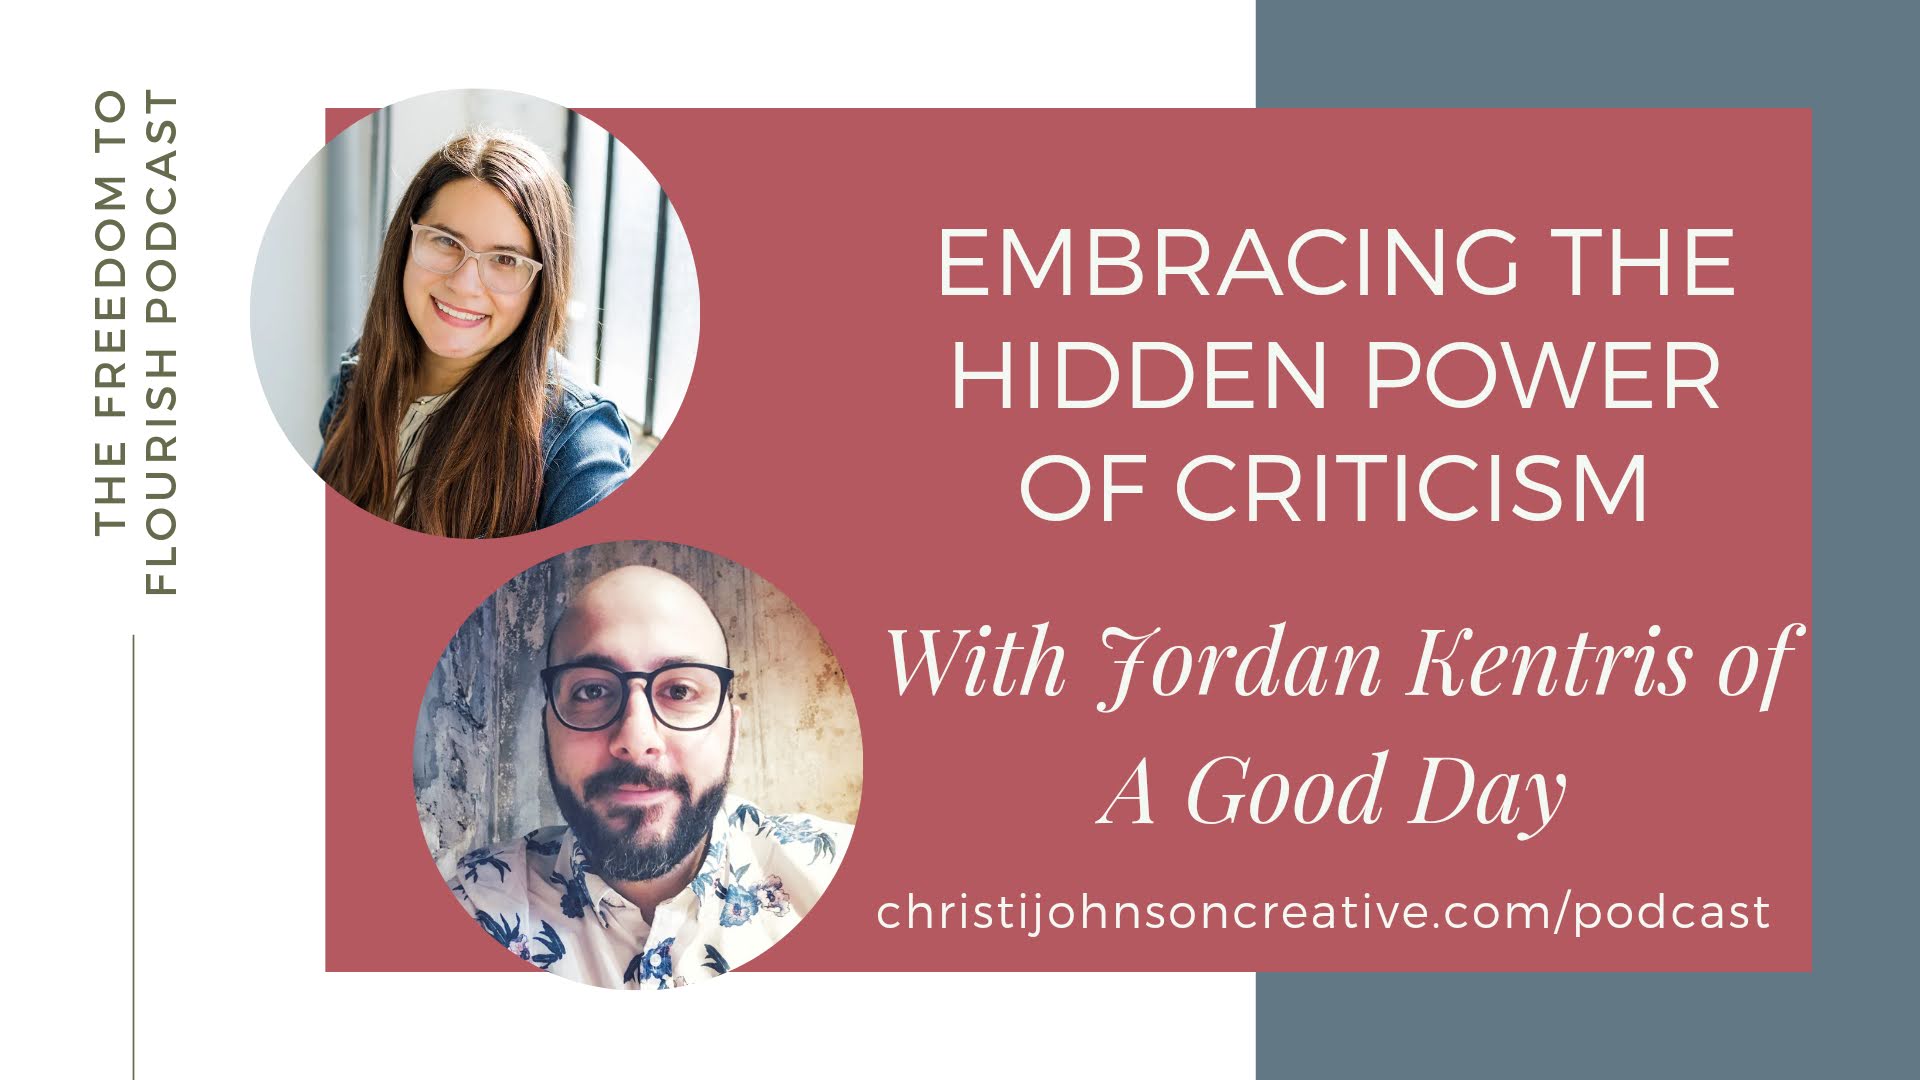 Embracing the Hidden Power of Criticism with Jordan Kentris of A Good Day